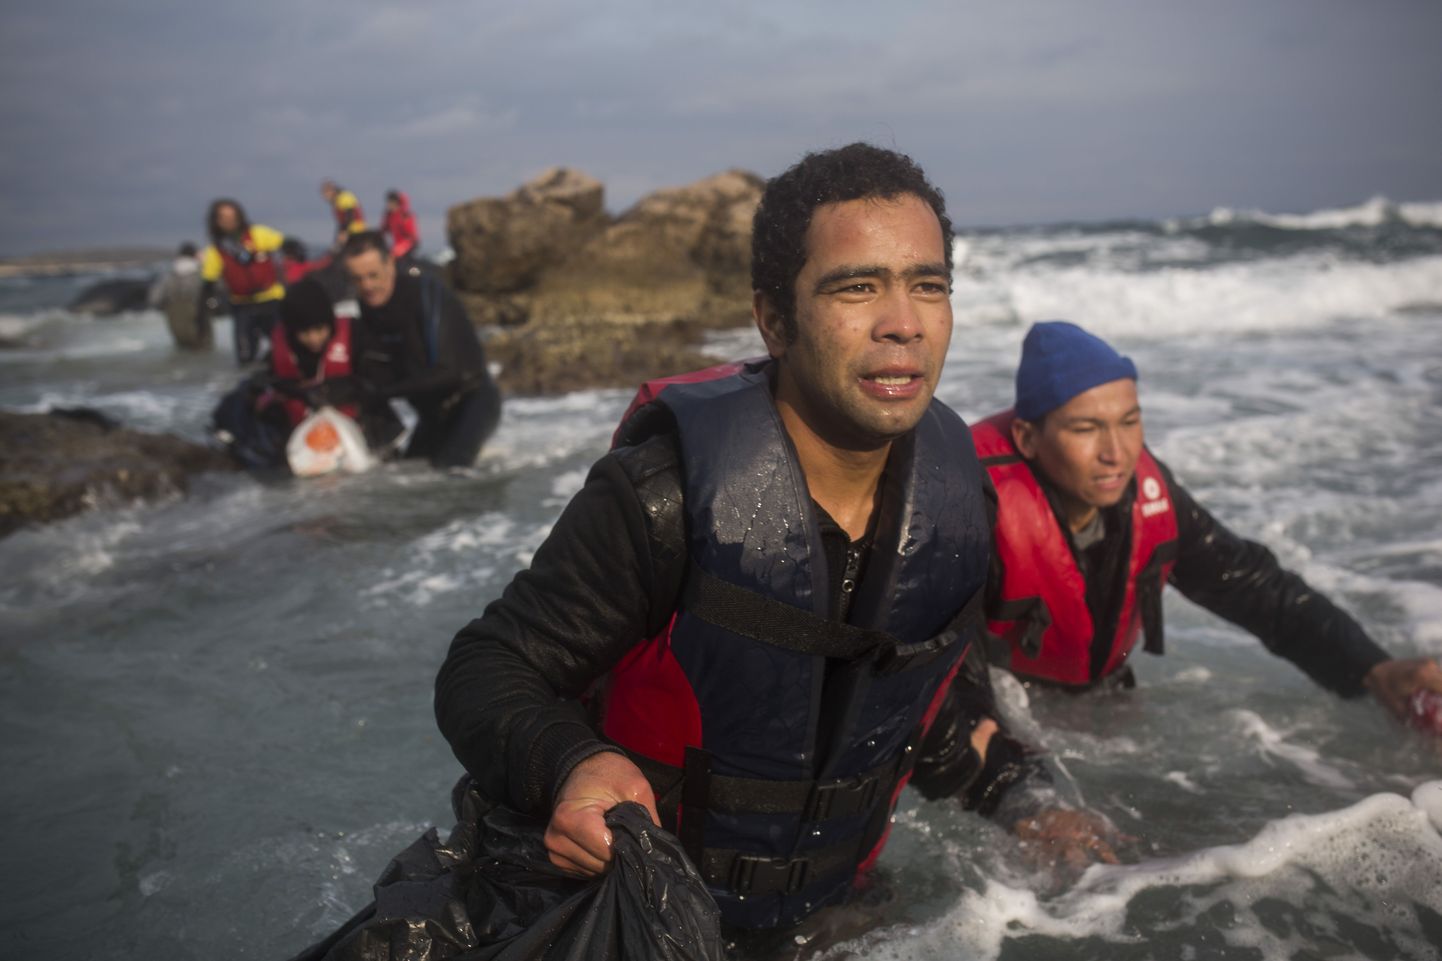 Migrandid läbi vee Lesbose saarele sumpamas, kuna nende paat sai kivisel rannikul kannatada.